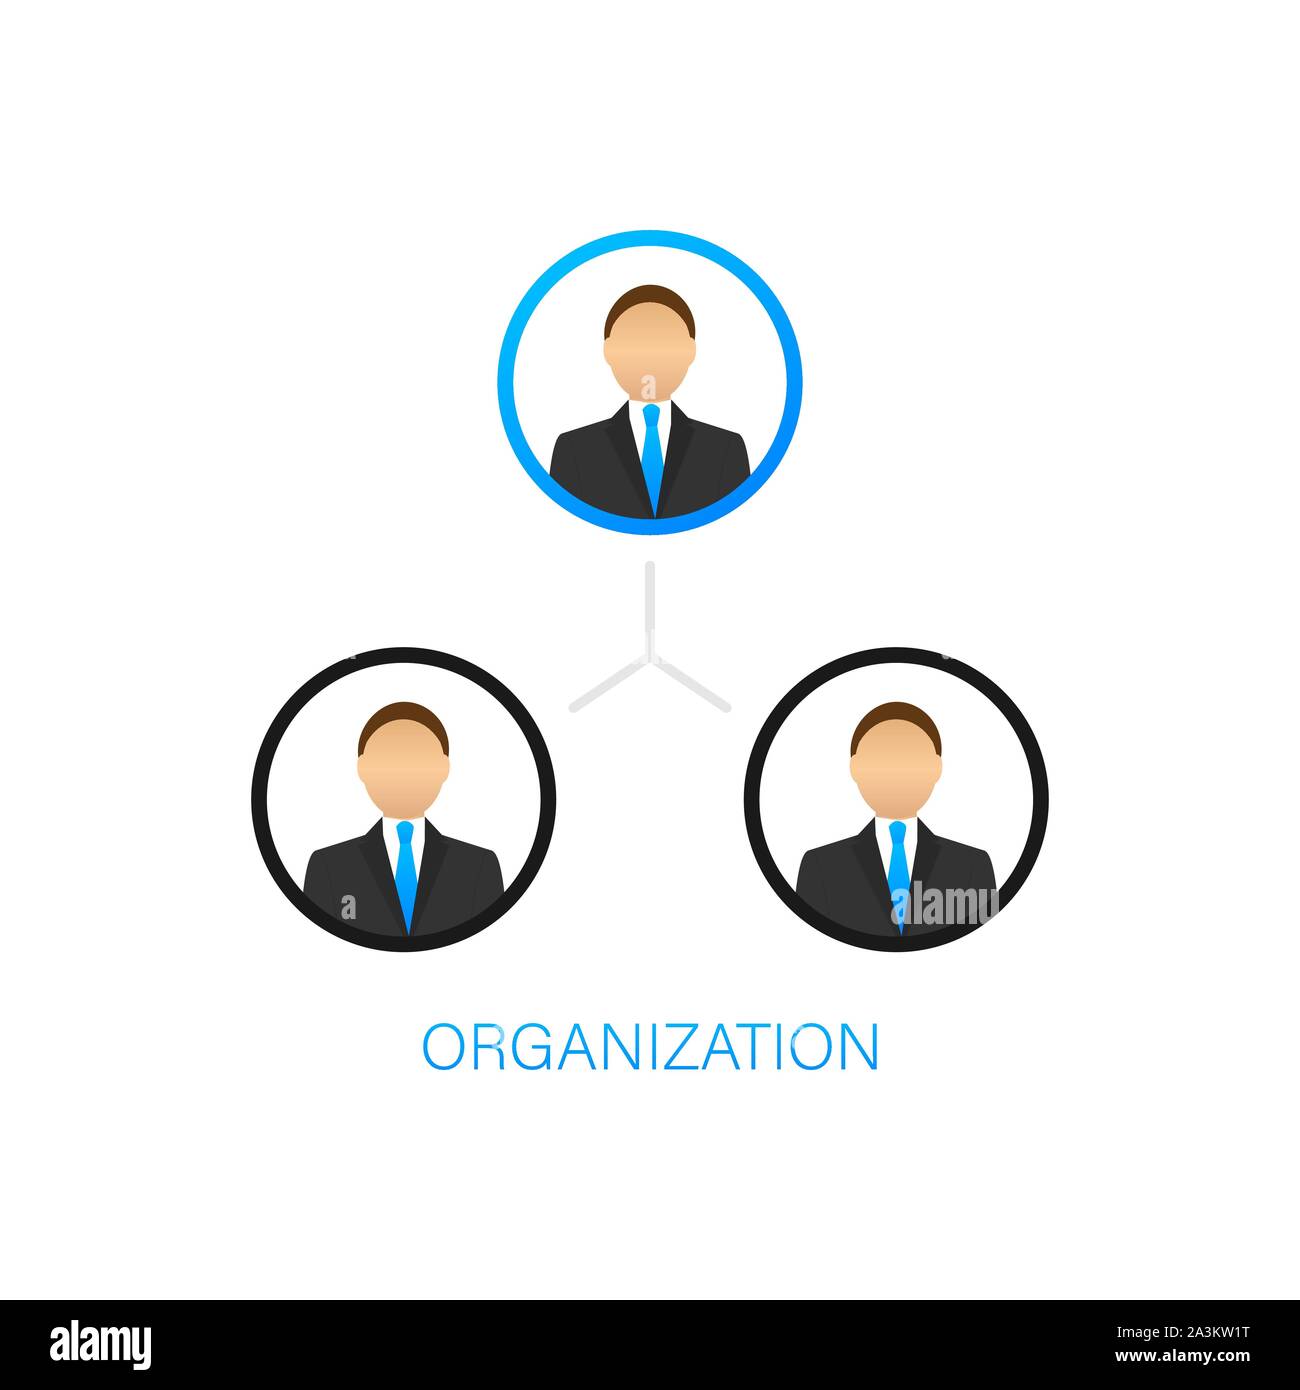 Mwss Organizational Chart